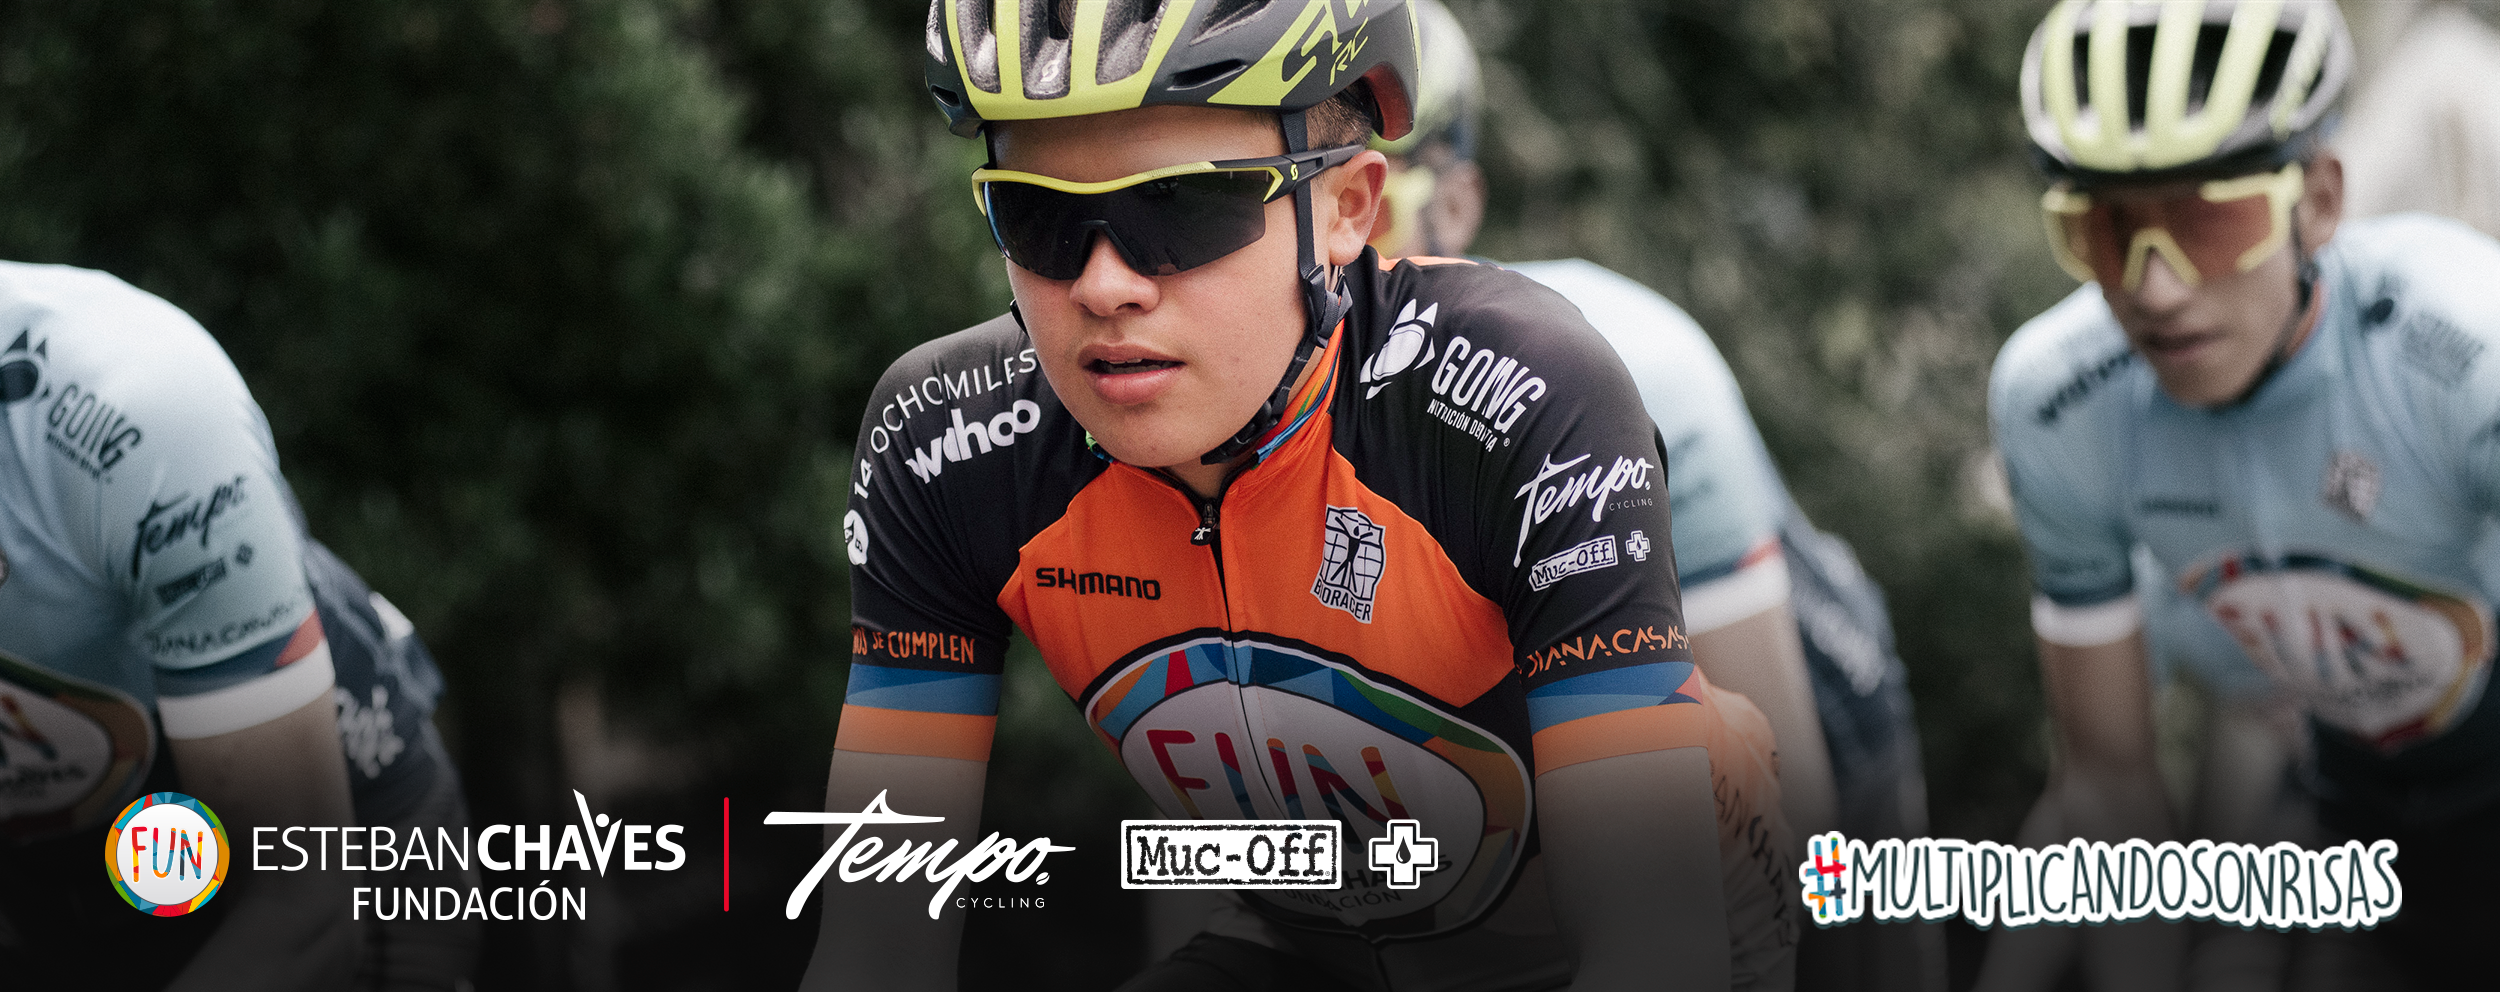 tempo_cycling_bogota